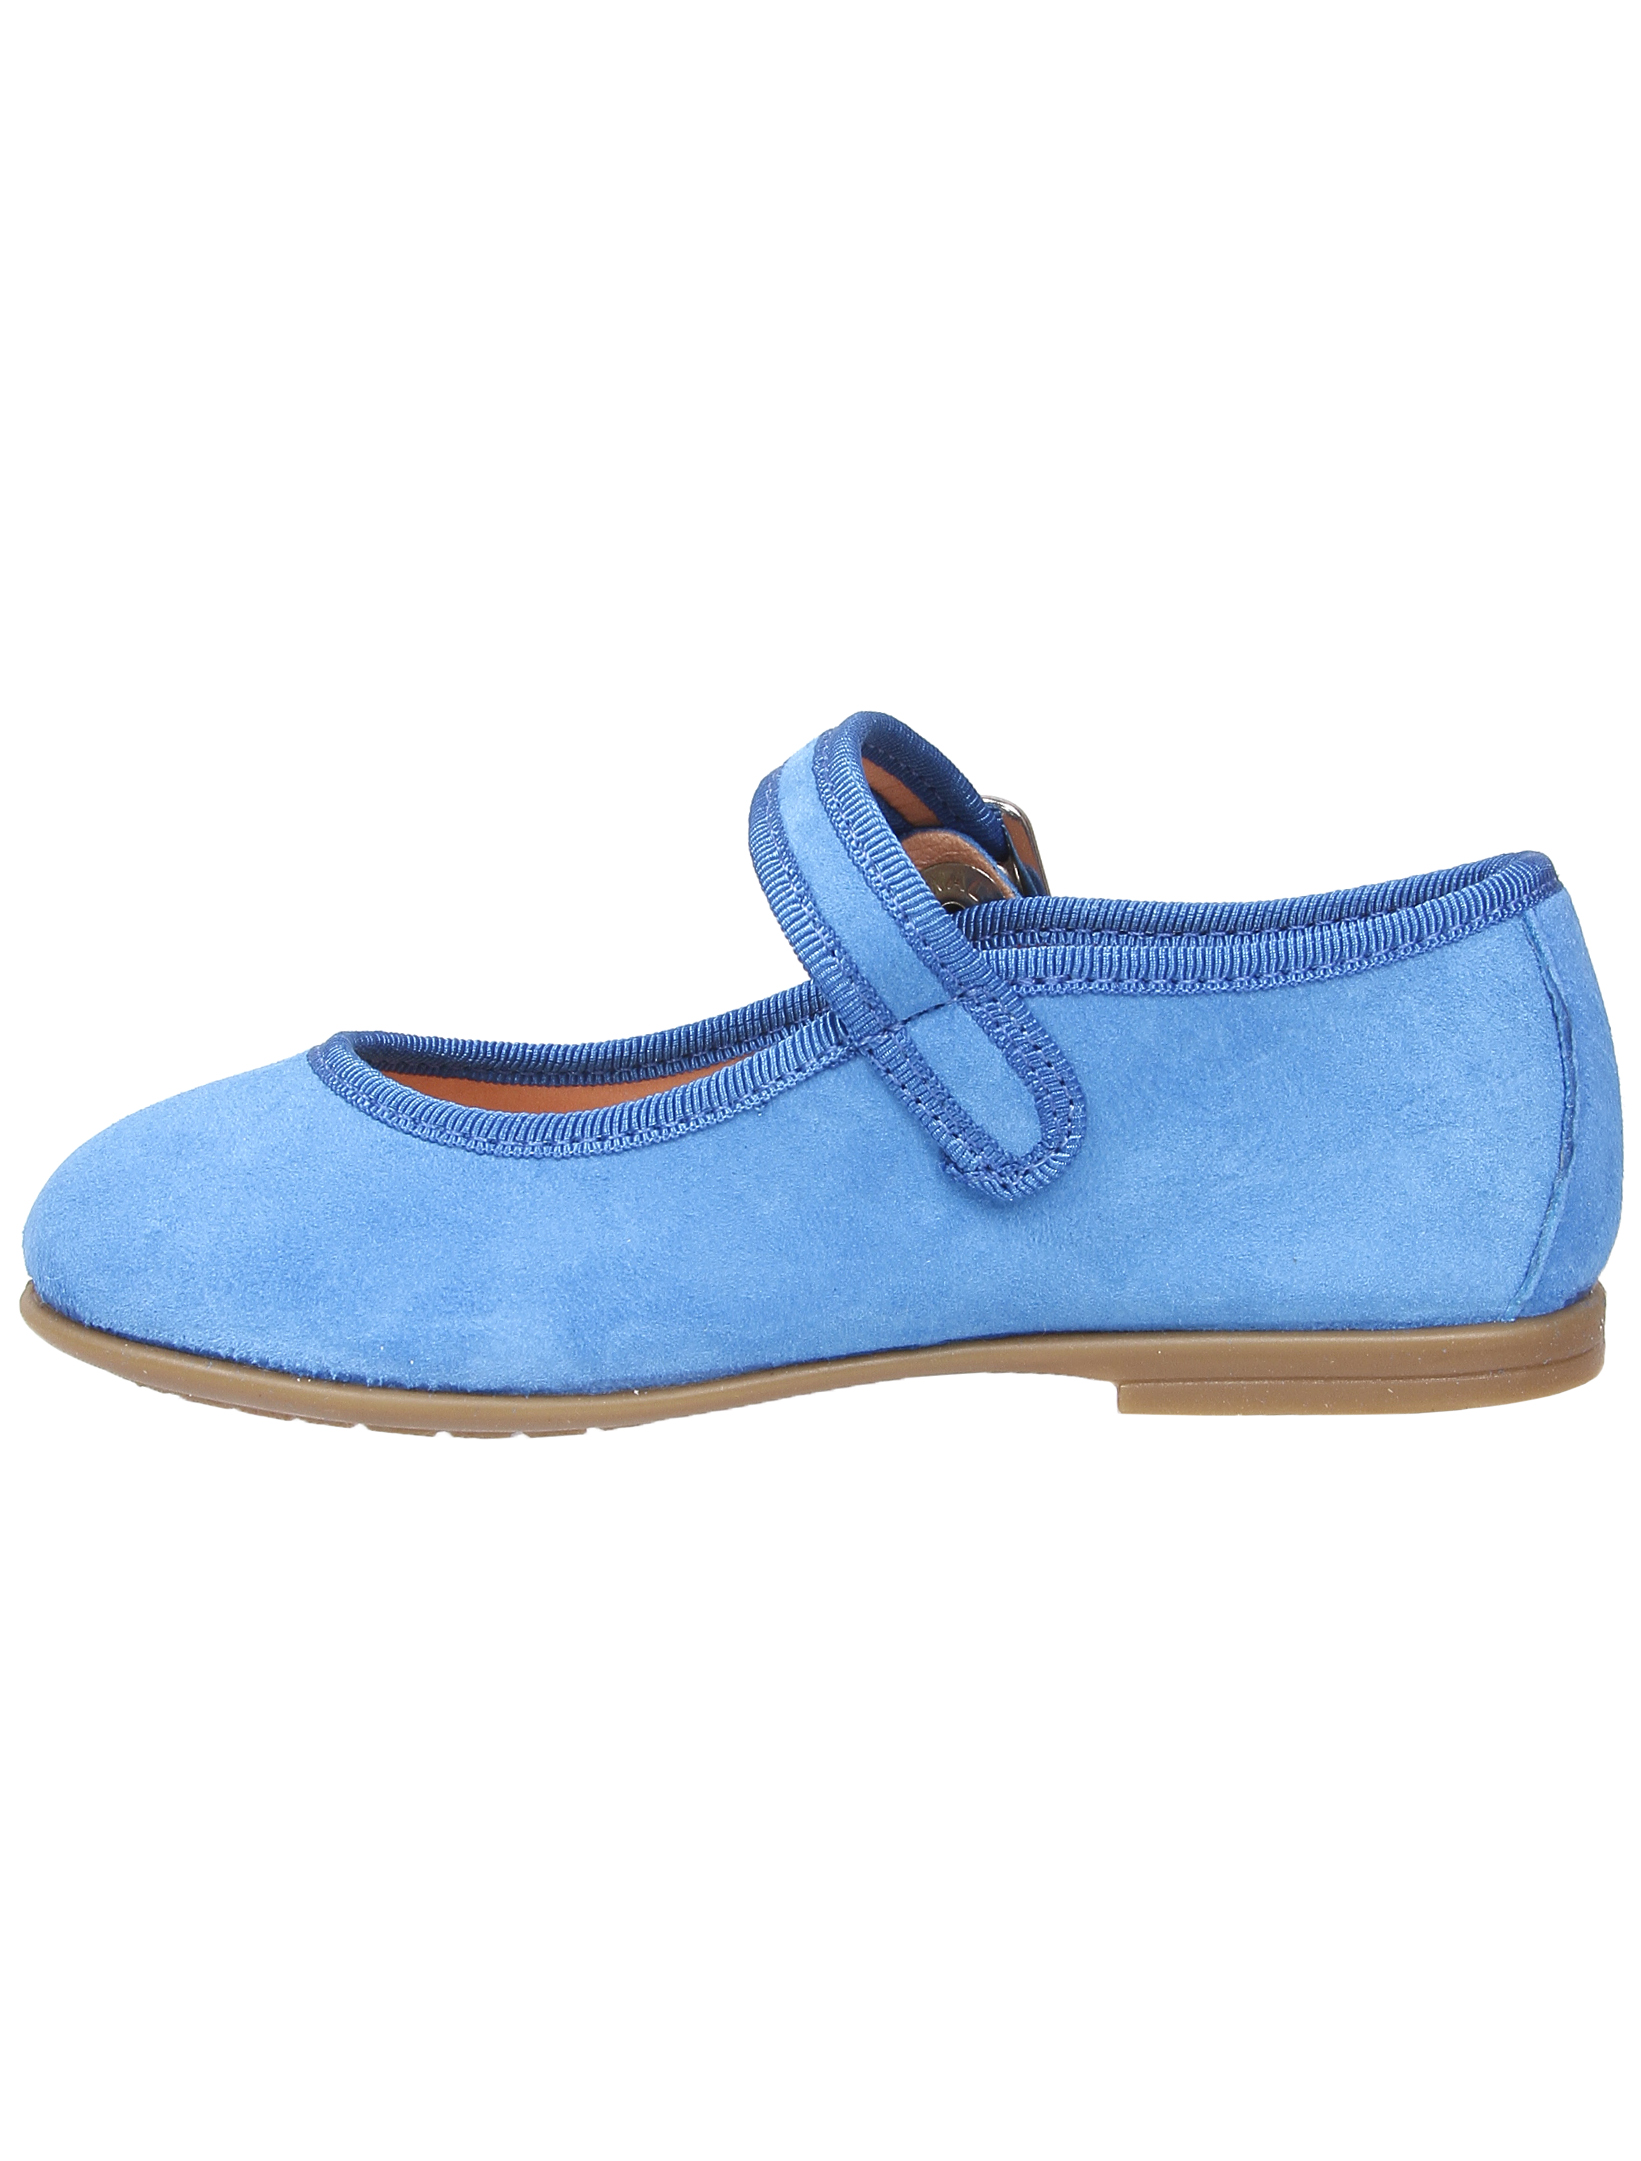 Туфли UNISA 1952860, цвет голубой, размер 30 2011509970013 - фото 4